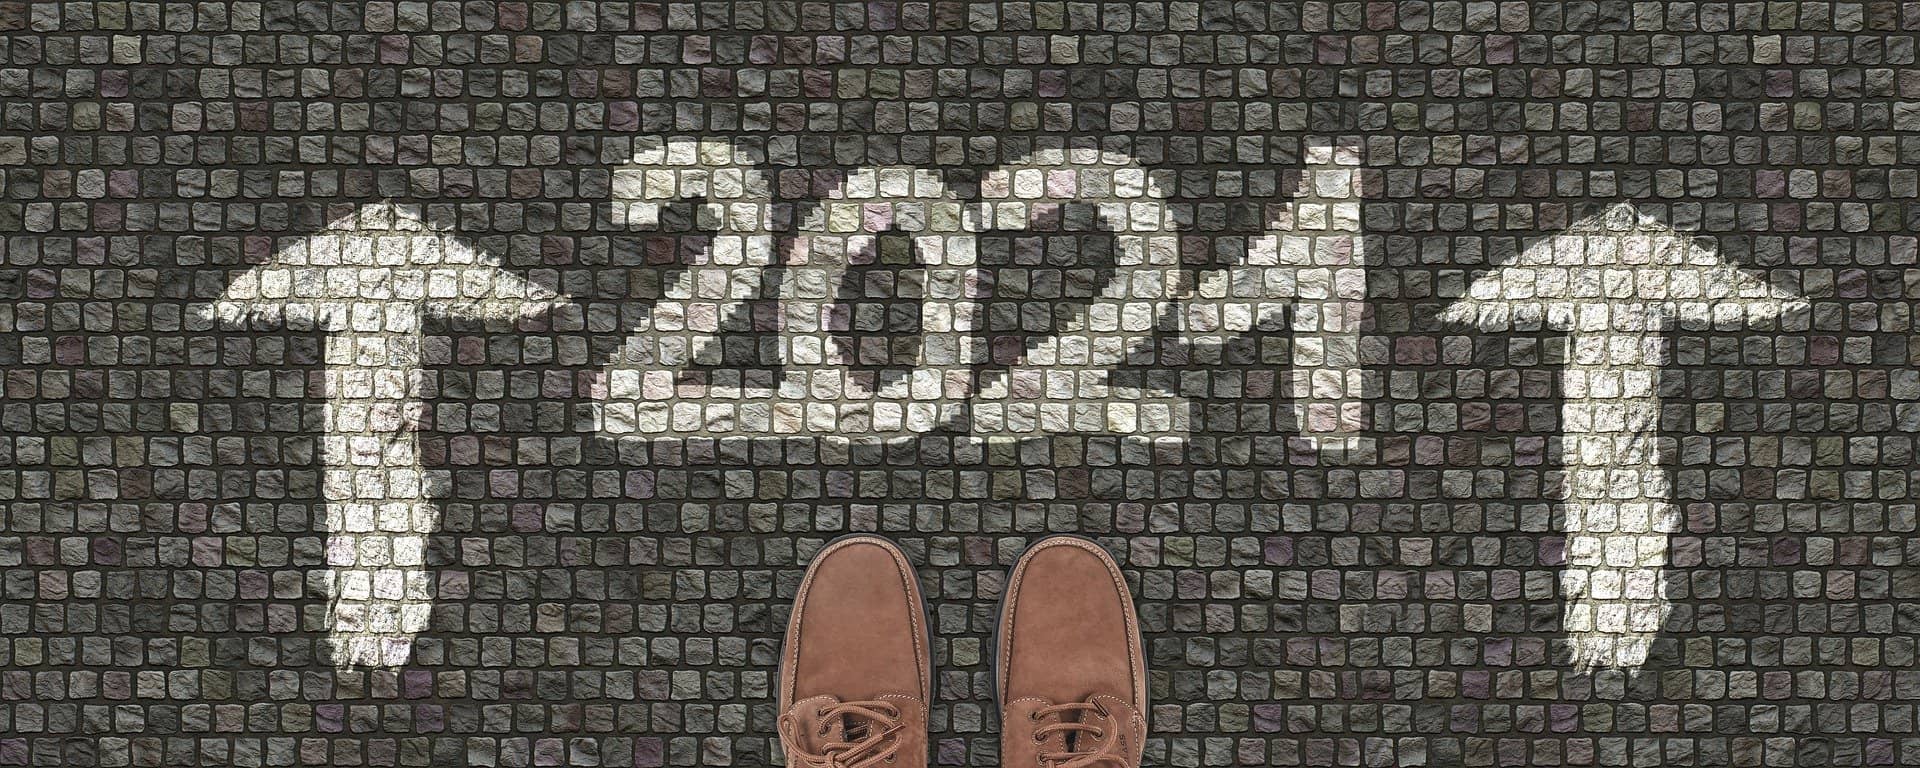 ¡FELIZ AÑO 2021! UNA MIRADA Y REVISIÓN 5